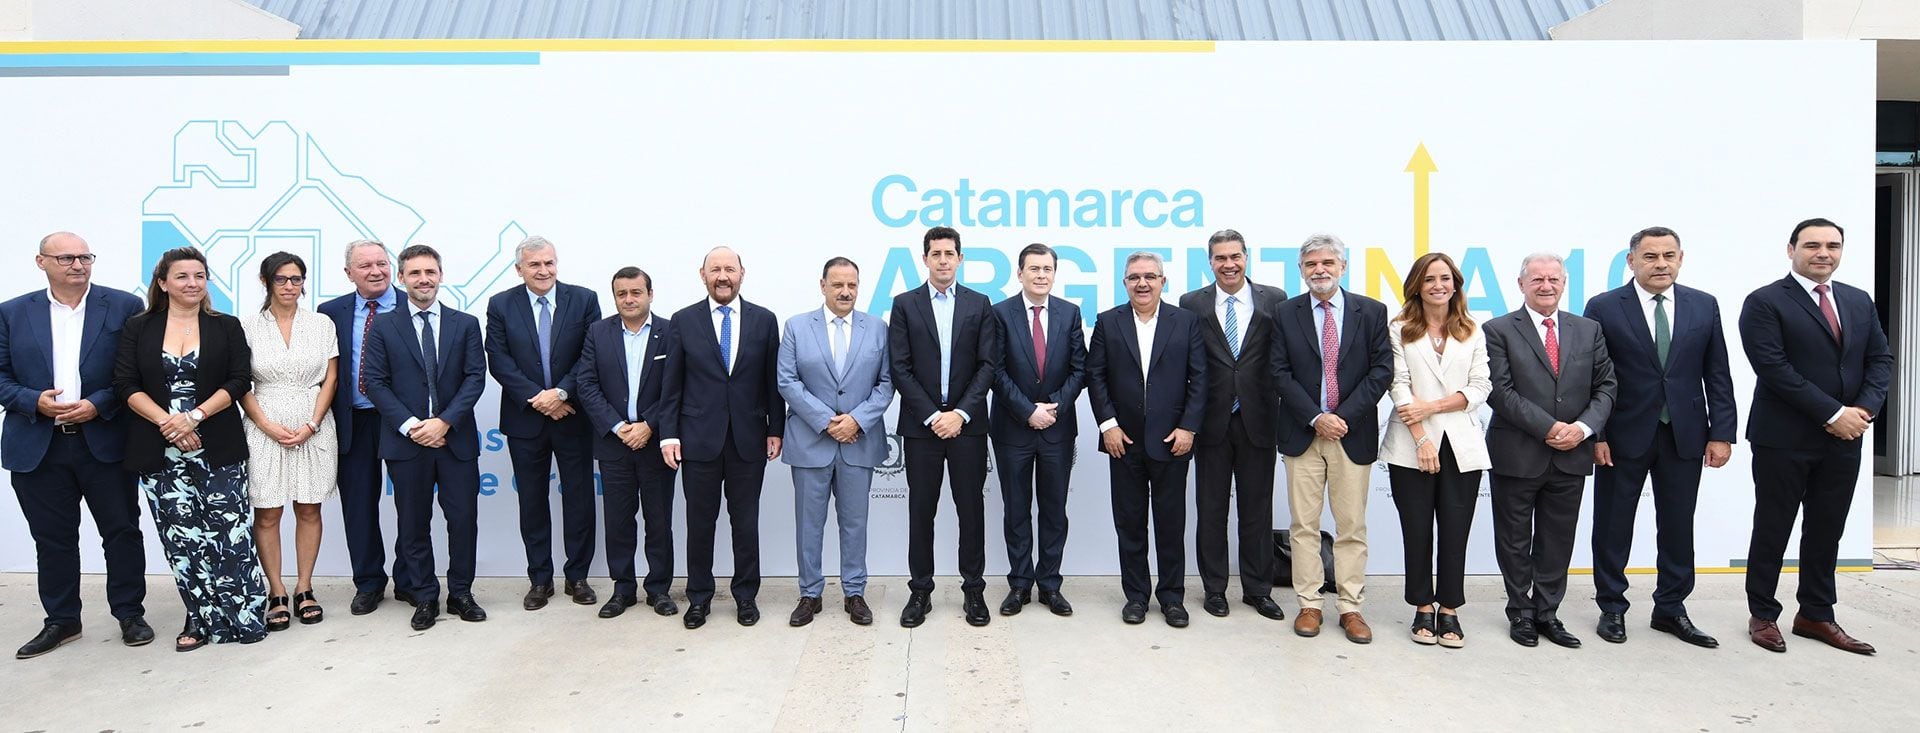 La foto de todos los gobernadores con algunos ministros del gabinete nacional durante el último encuentro del Norte Grande, en Catamarca, el 14 de marzo pasado